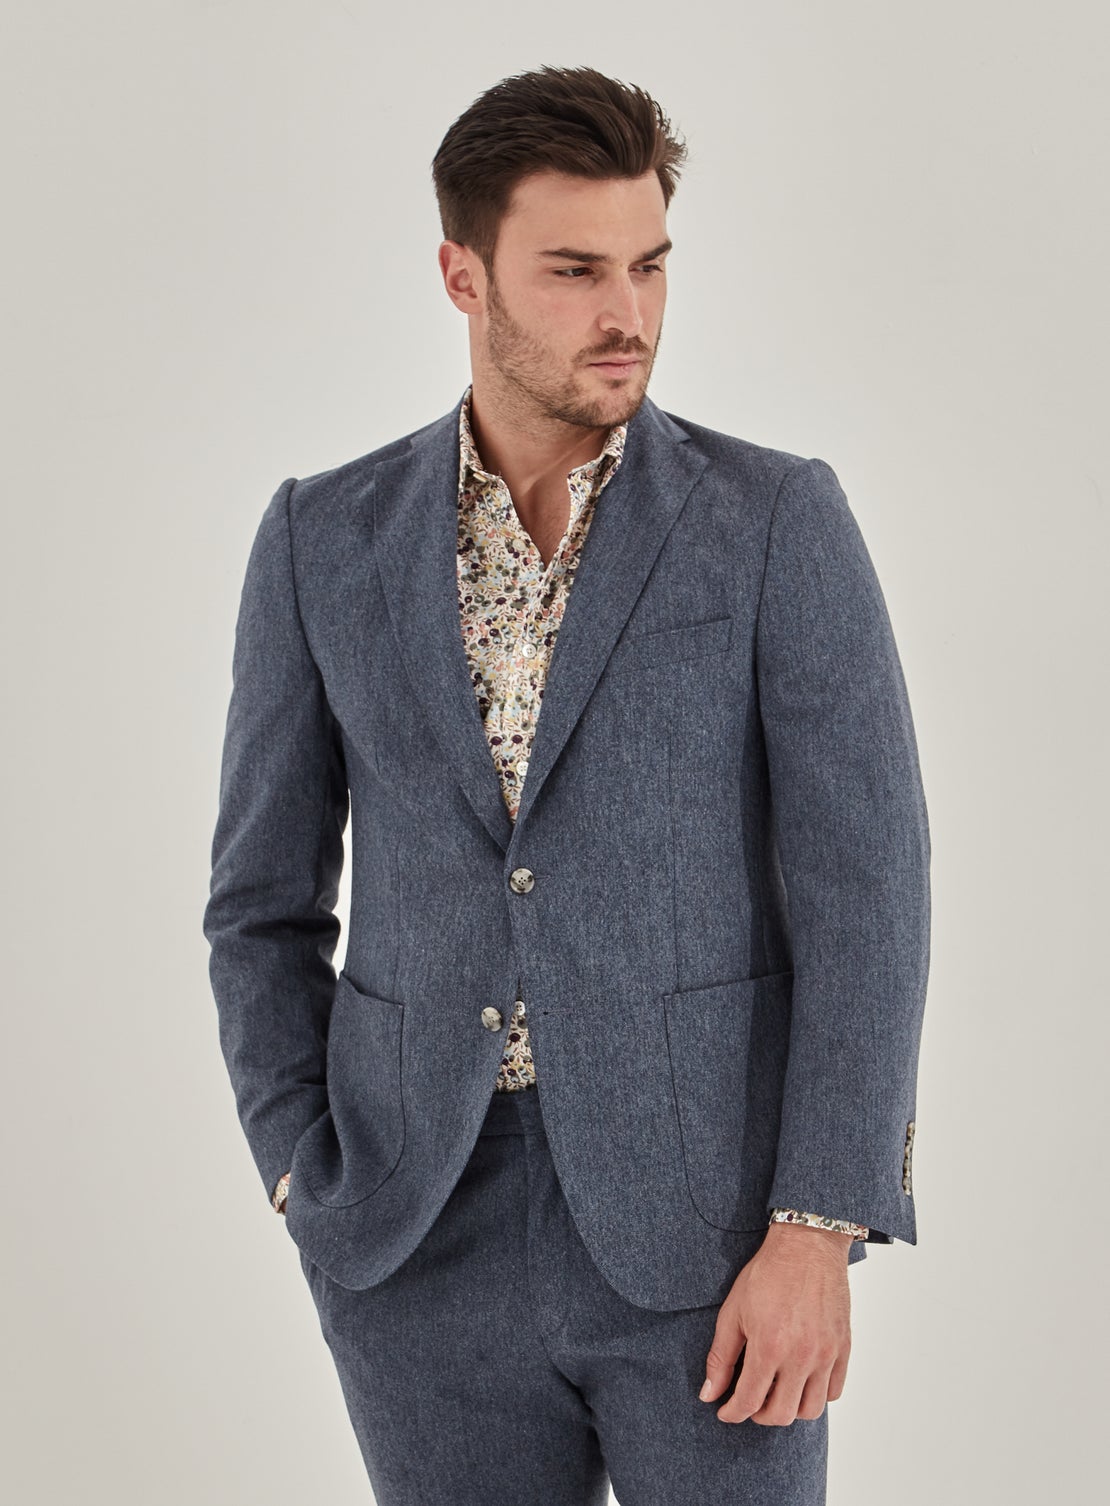 Blue Tweed Separates Jacket